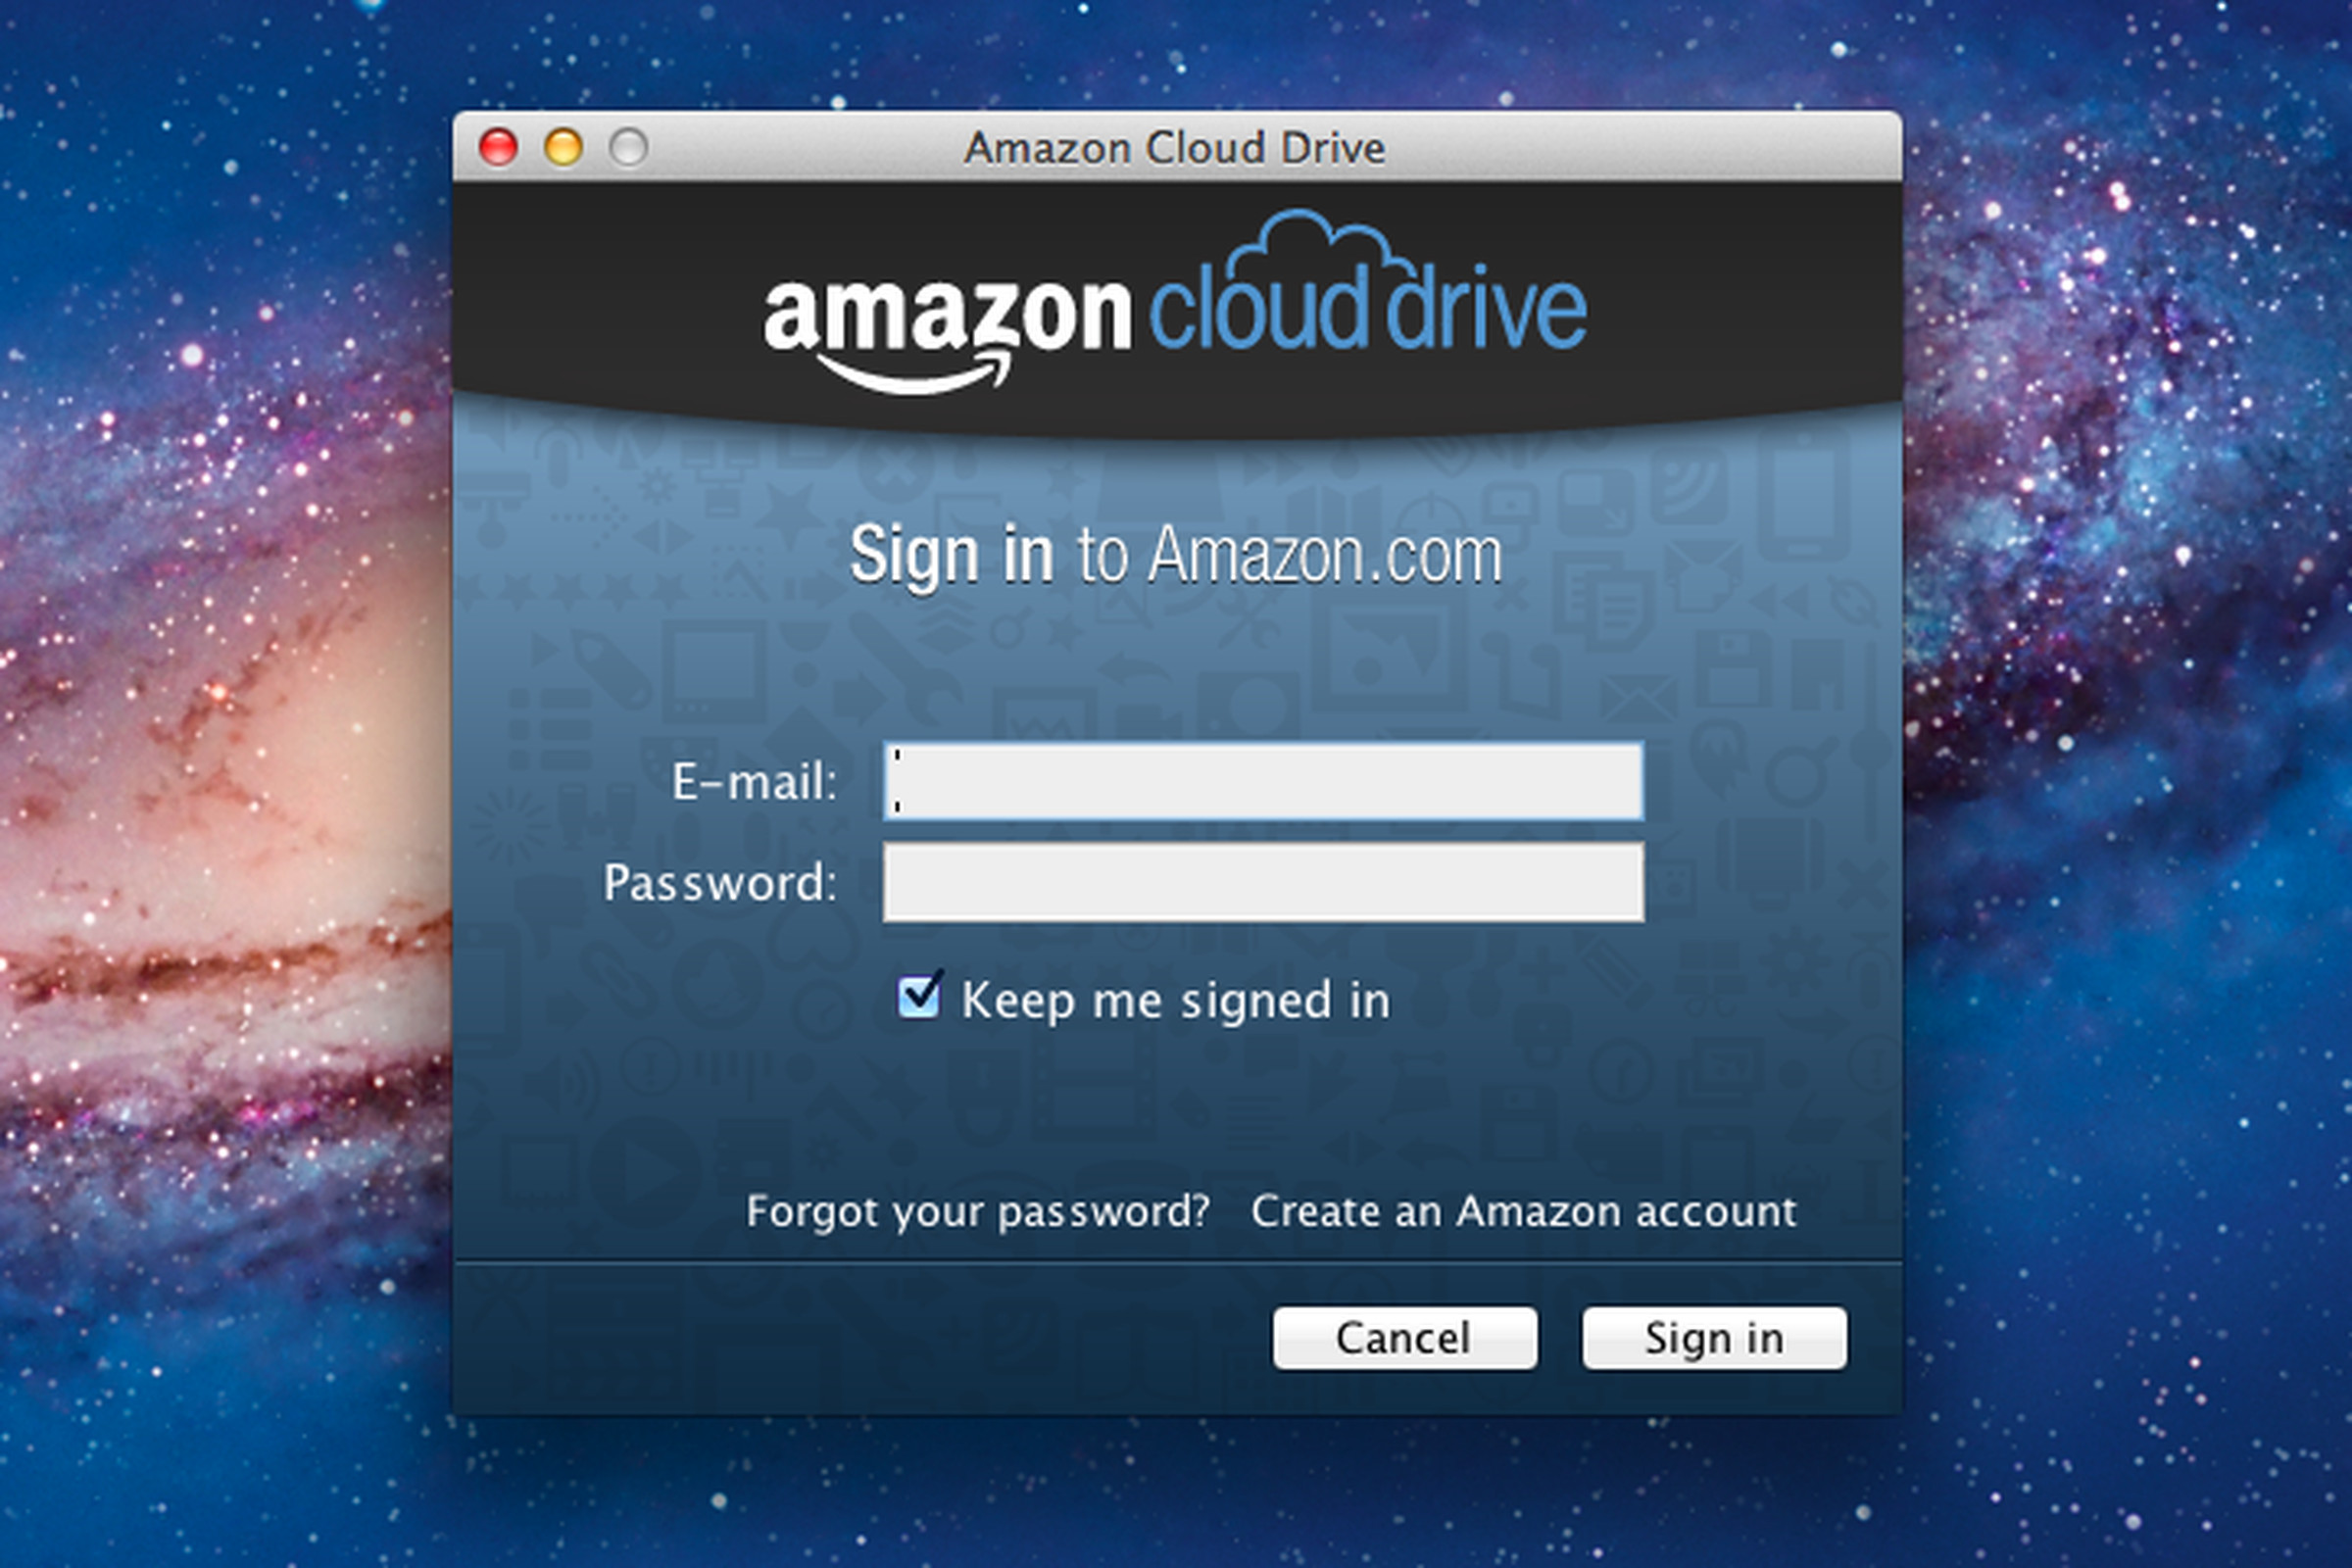 Amazon cloud drive